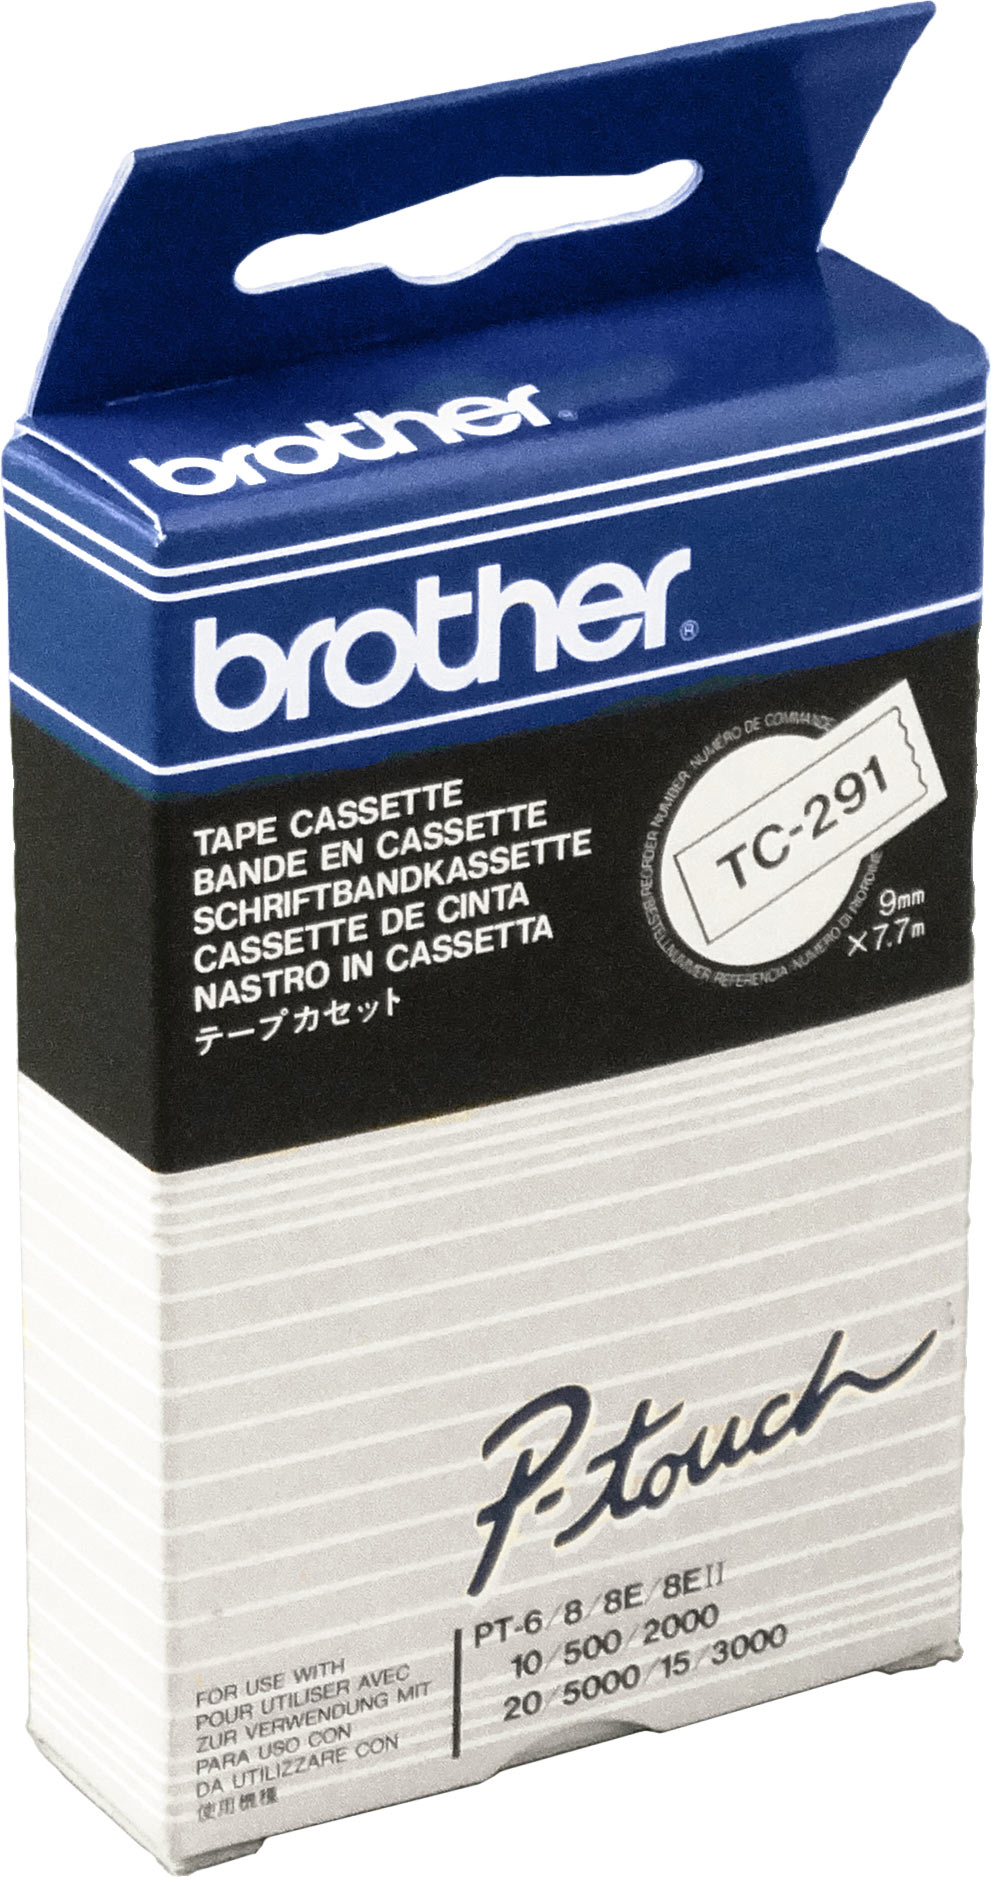 Brother P-Touch Band TC-291  schwarz auf weiß  9mm / 7,7m  laminiert